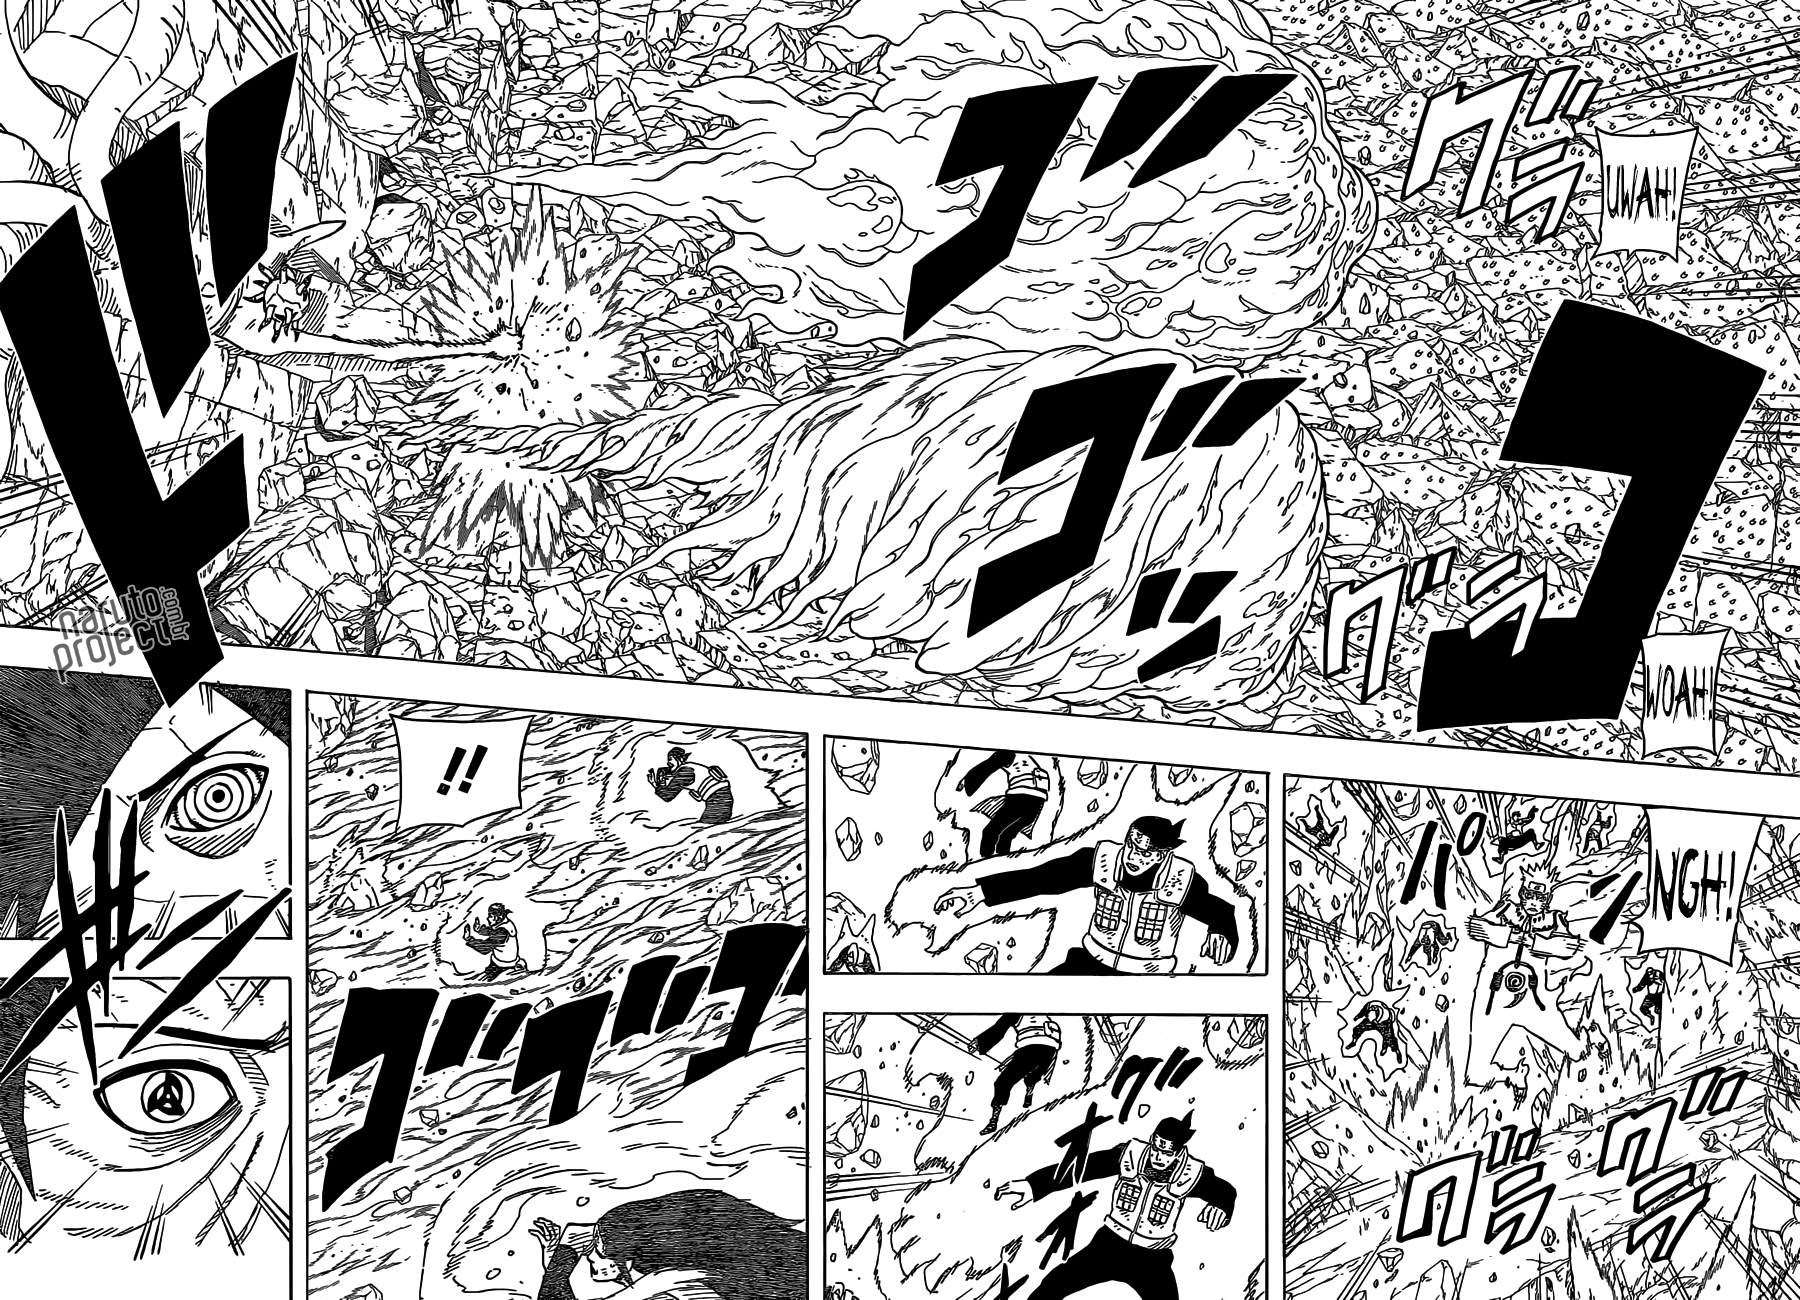 Sasuke atual poderia fazer katons em grande escala como o Madara? - Página 2 02